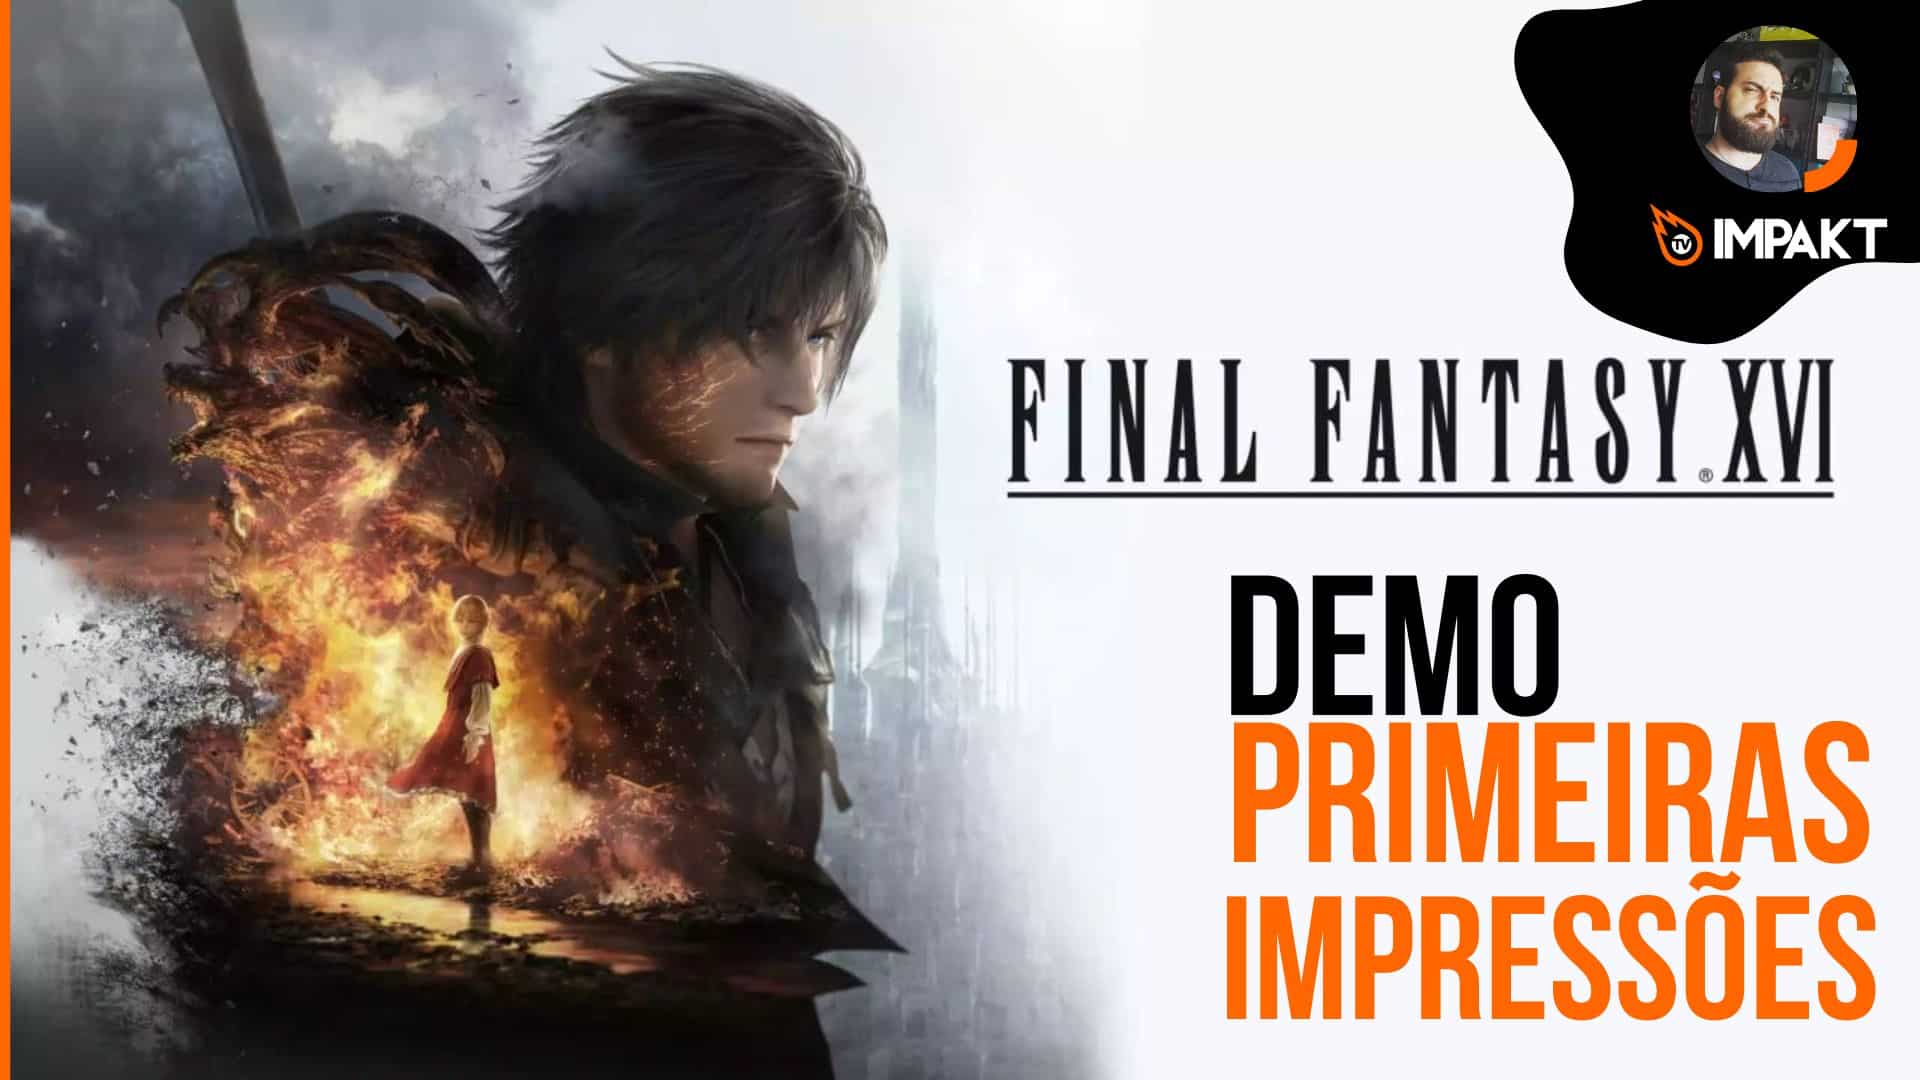 Demo de Final Fantasy XVI – Primeiras Impressões